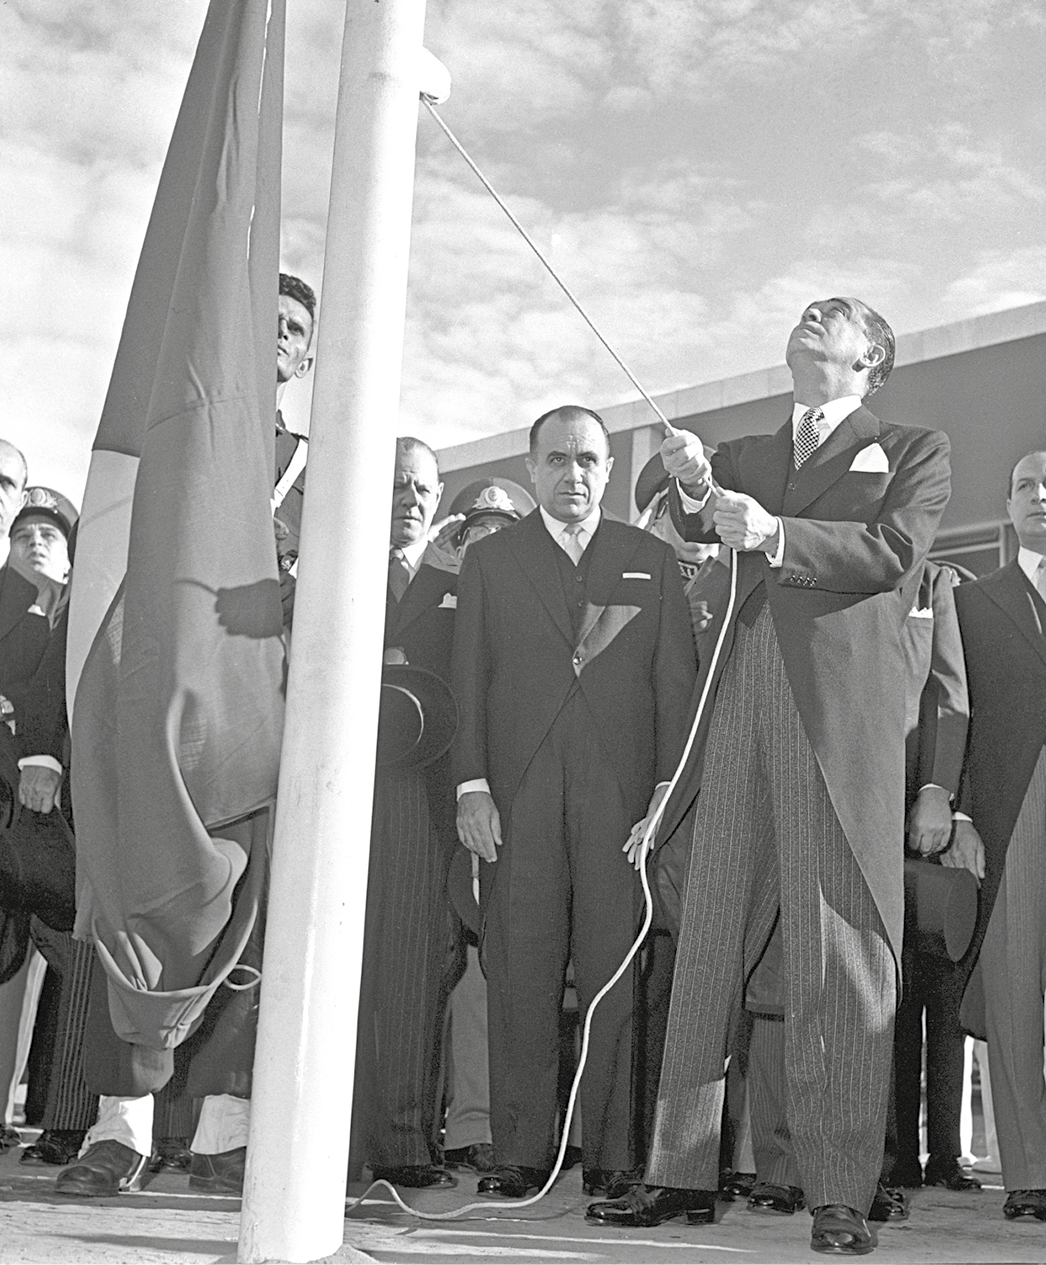 Fotografia em preto e branco. Juscelino Kubitschek hasteando uma bandeira. Ele está olhando para cima. Ao redor dele pessoas observam o ato.